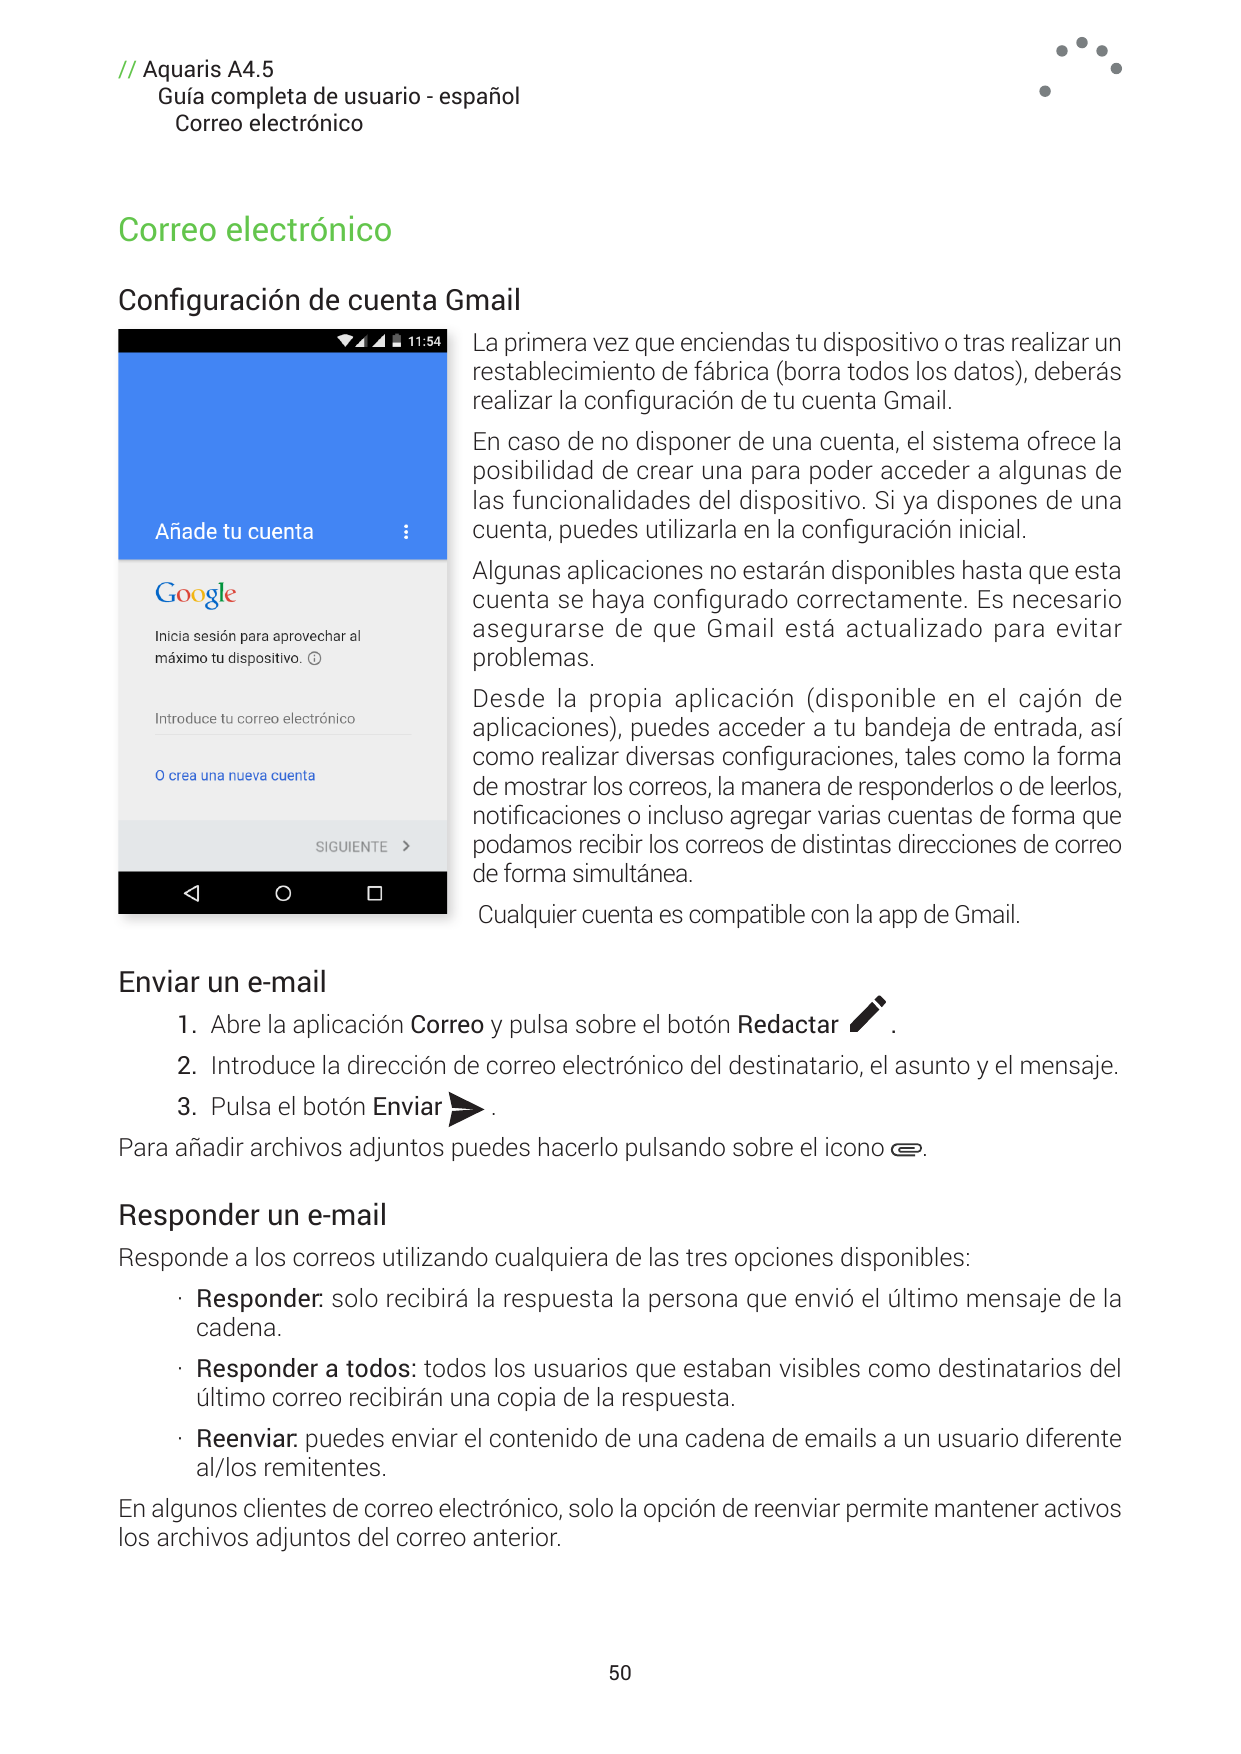 // Aquaris A4.5Guía completa de usuario - españolCorreo electrónicoCorreo electrónicoConfiguración de cuenta GmailLa primera vez